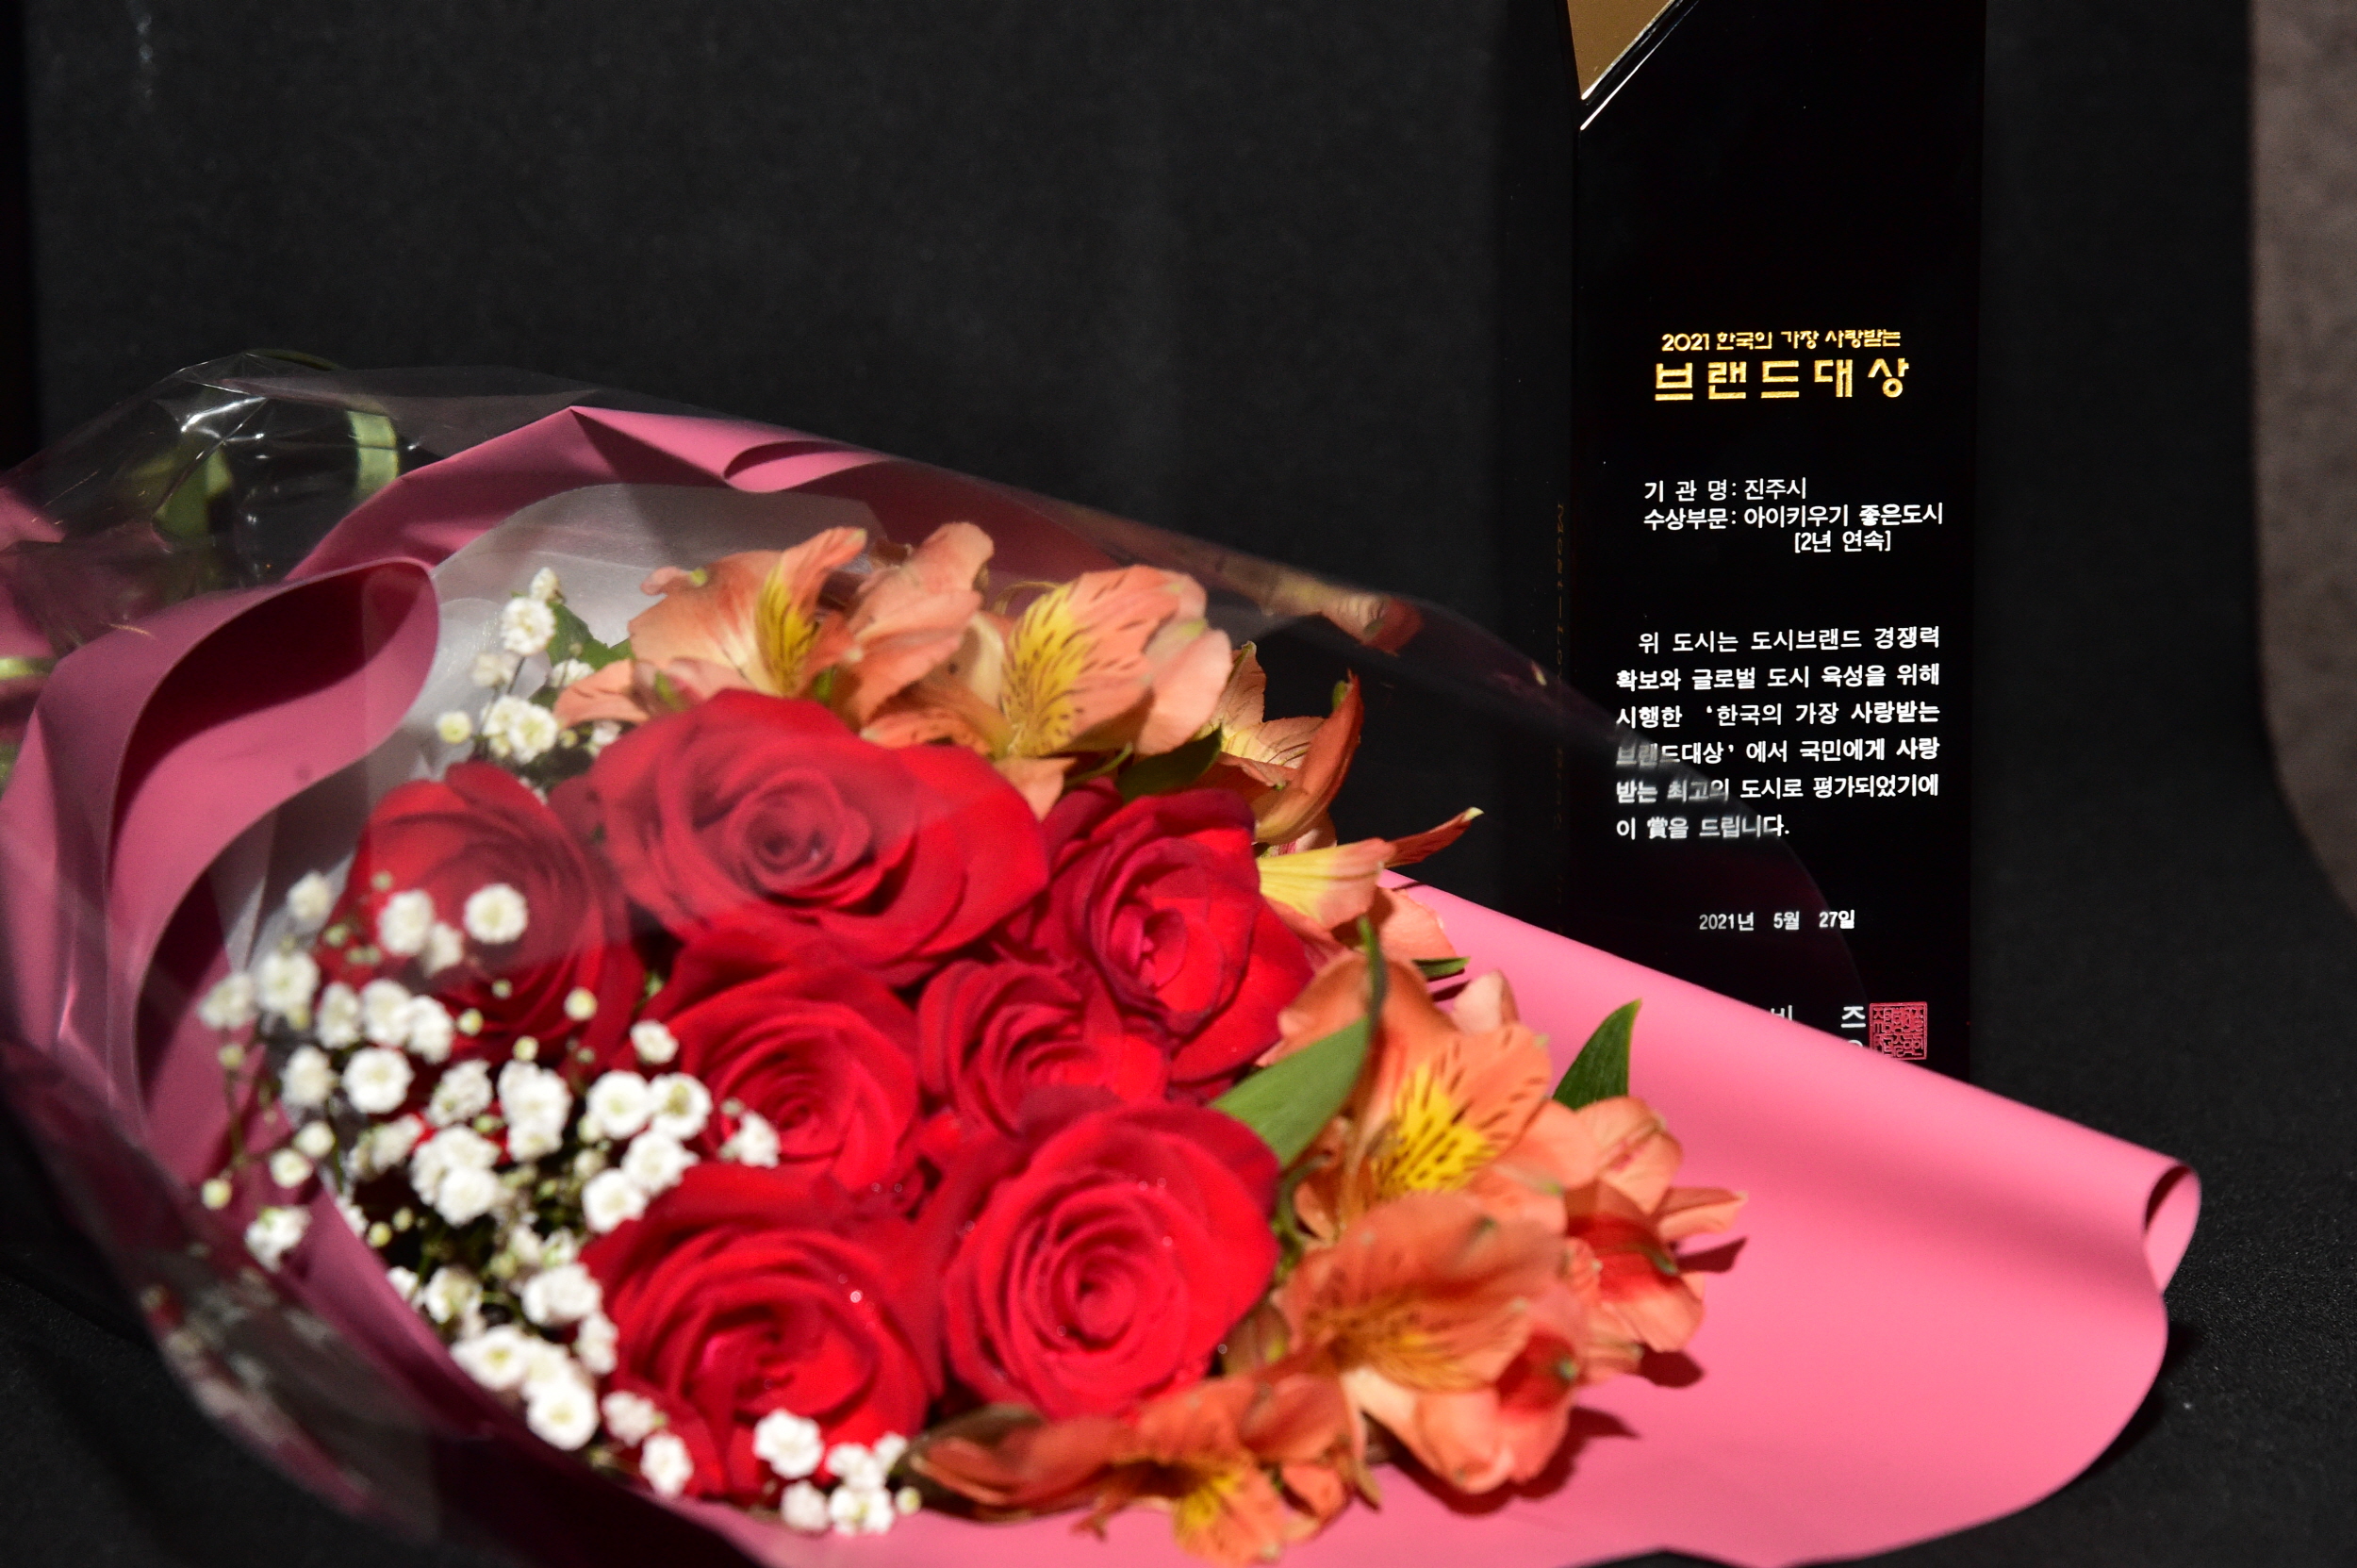 진주시, 한국의 가장 사랑받는 브랜드 대상 2년 연속 수상 (1).jpg